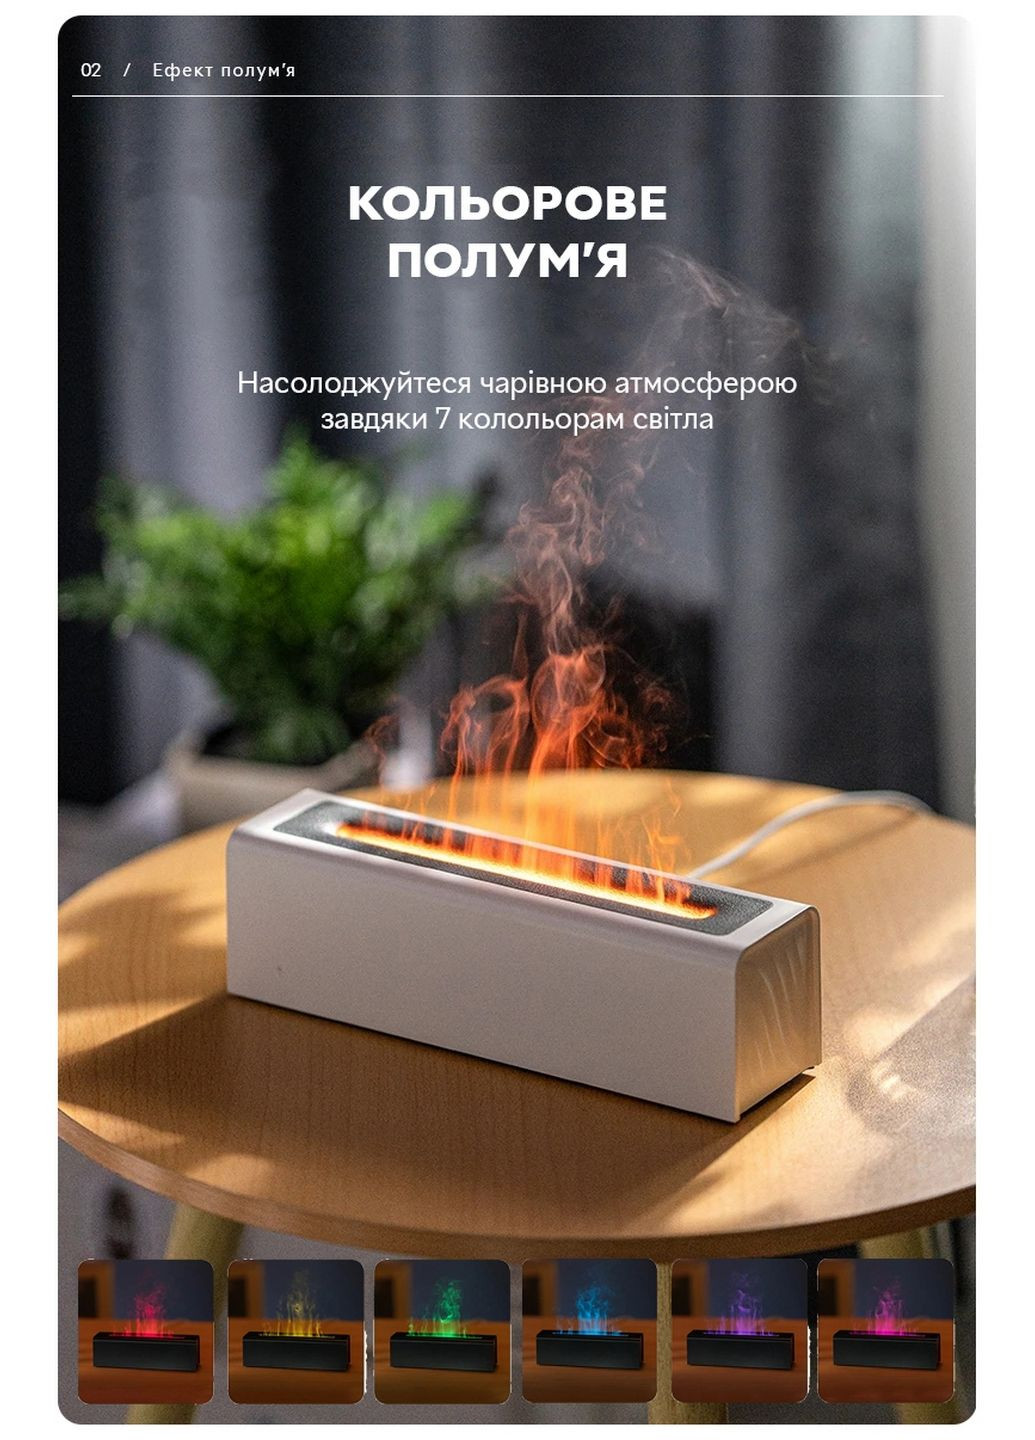 Зволожувач повітря портативний DQ-711 Nordic Style Flame V3 аромадифузор електричний, ефект полум'я, ПОДАРУНОК + 2 Арома олії Kinscoter (293479829)